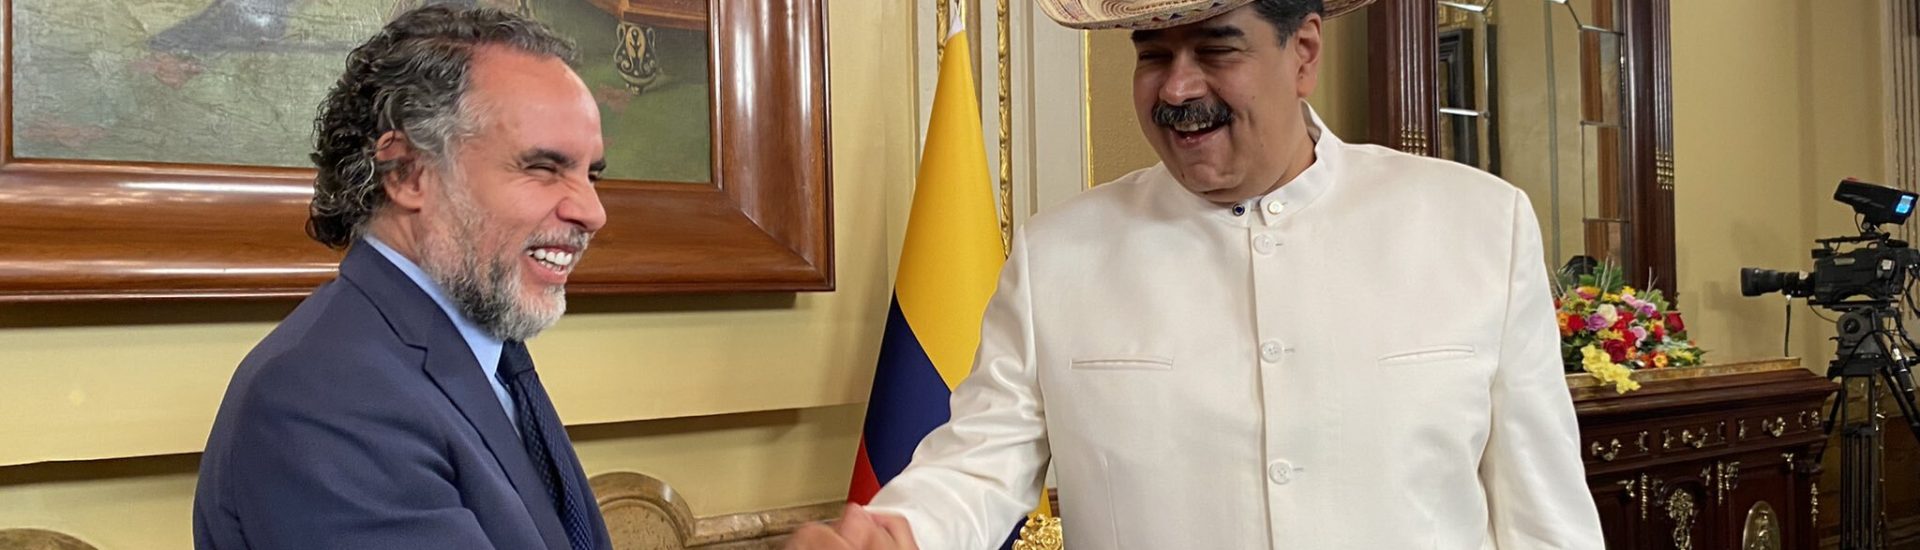 Comercio y energía serán temas cruciales en restablecimiento de relaciones entre Colombia y Venezuela